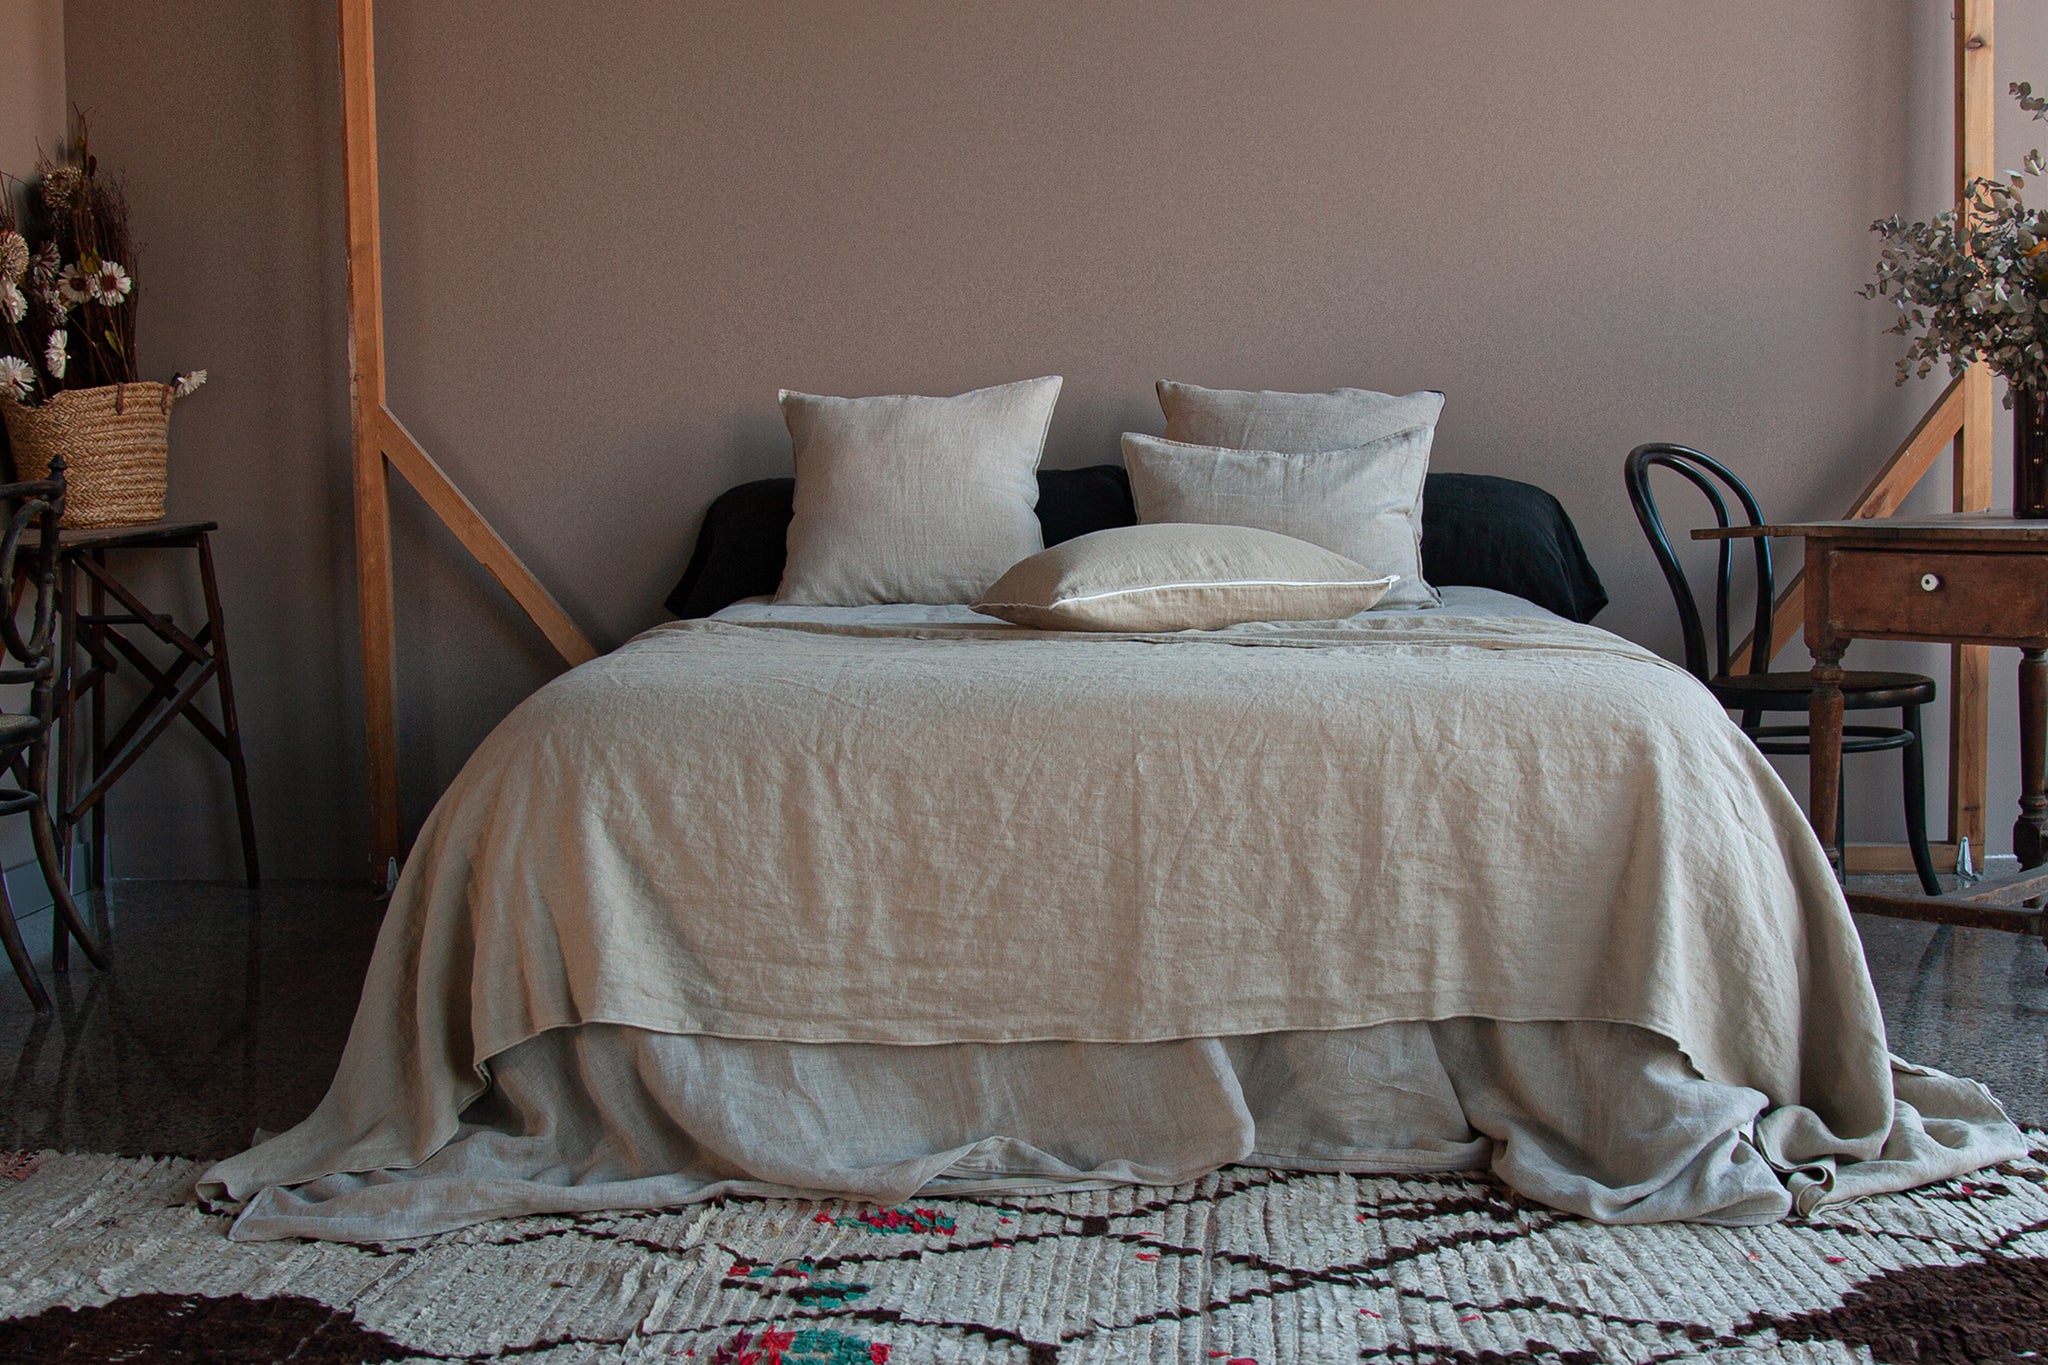 Colcha de lino de color arena, sobre cama vestida de lino natural.